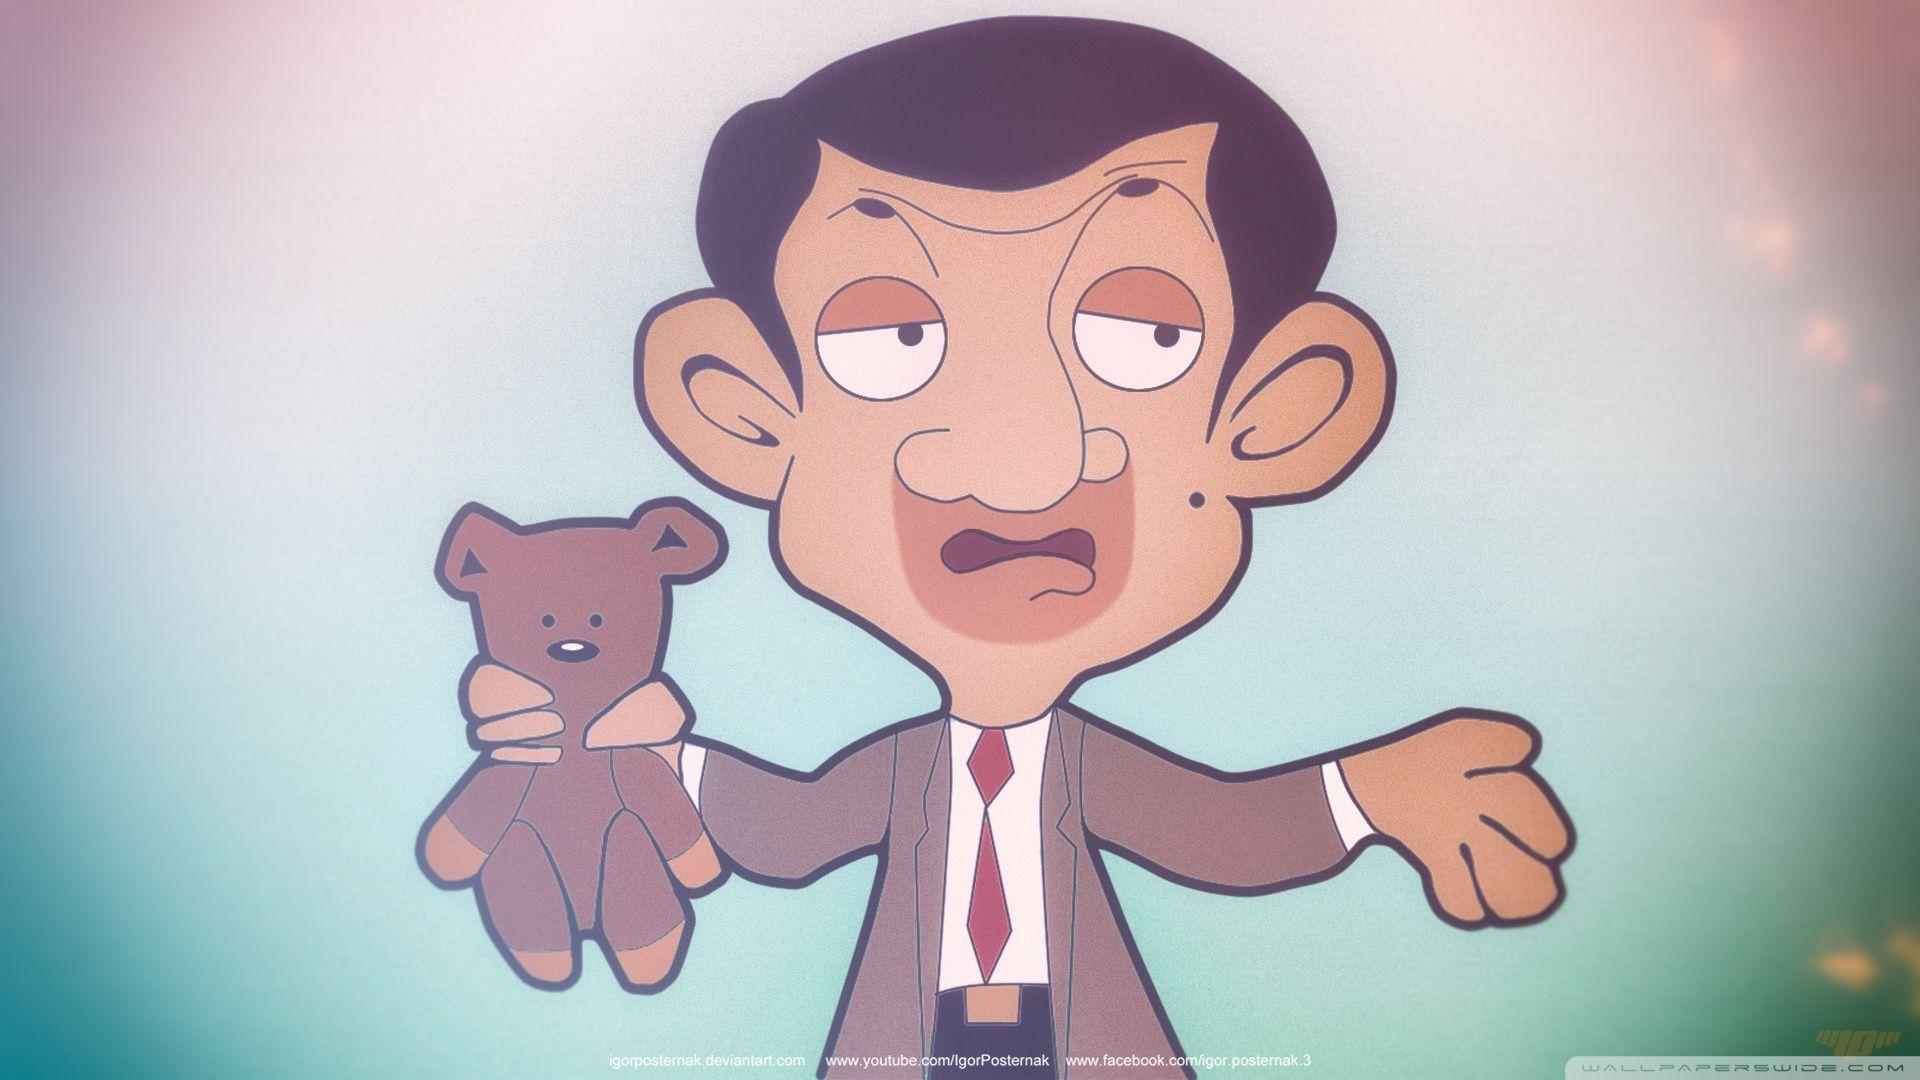 Mr. Bean Wallpaper